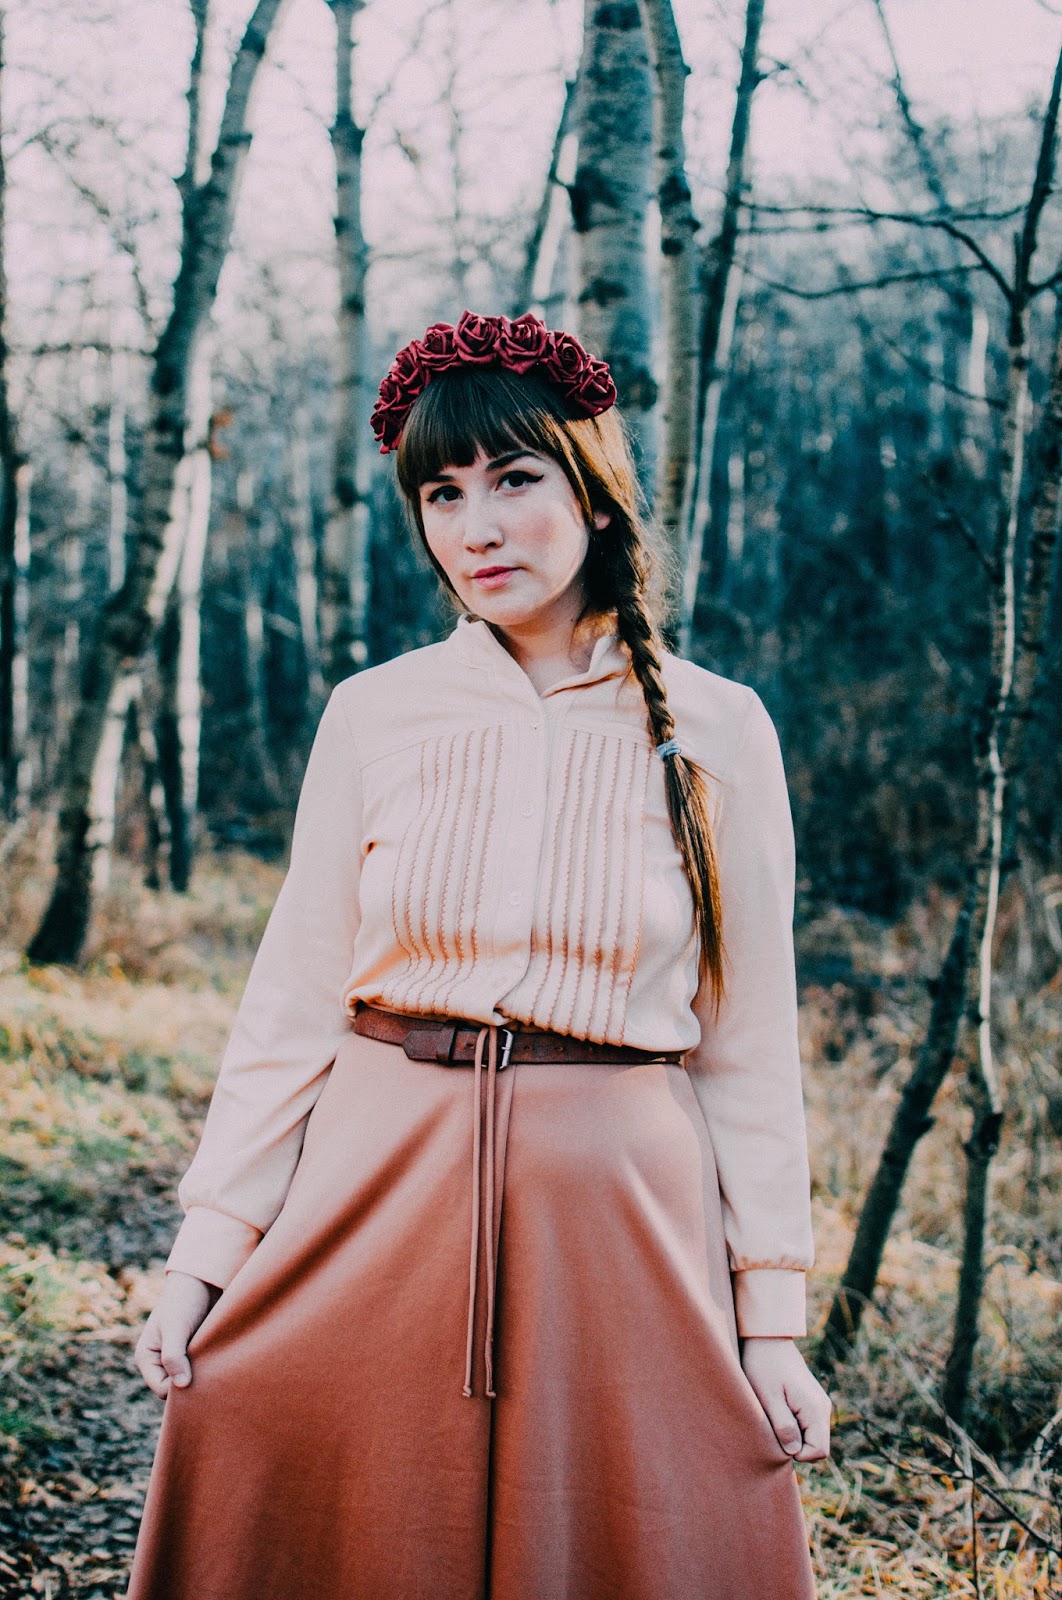 the folk singer | Amy Nelson